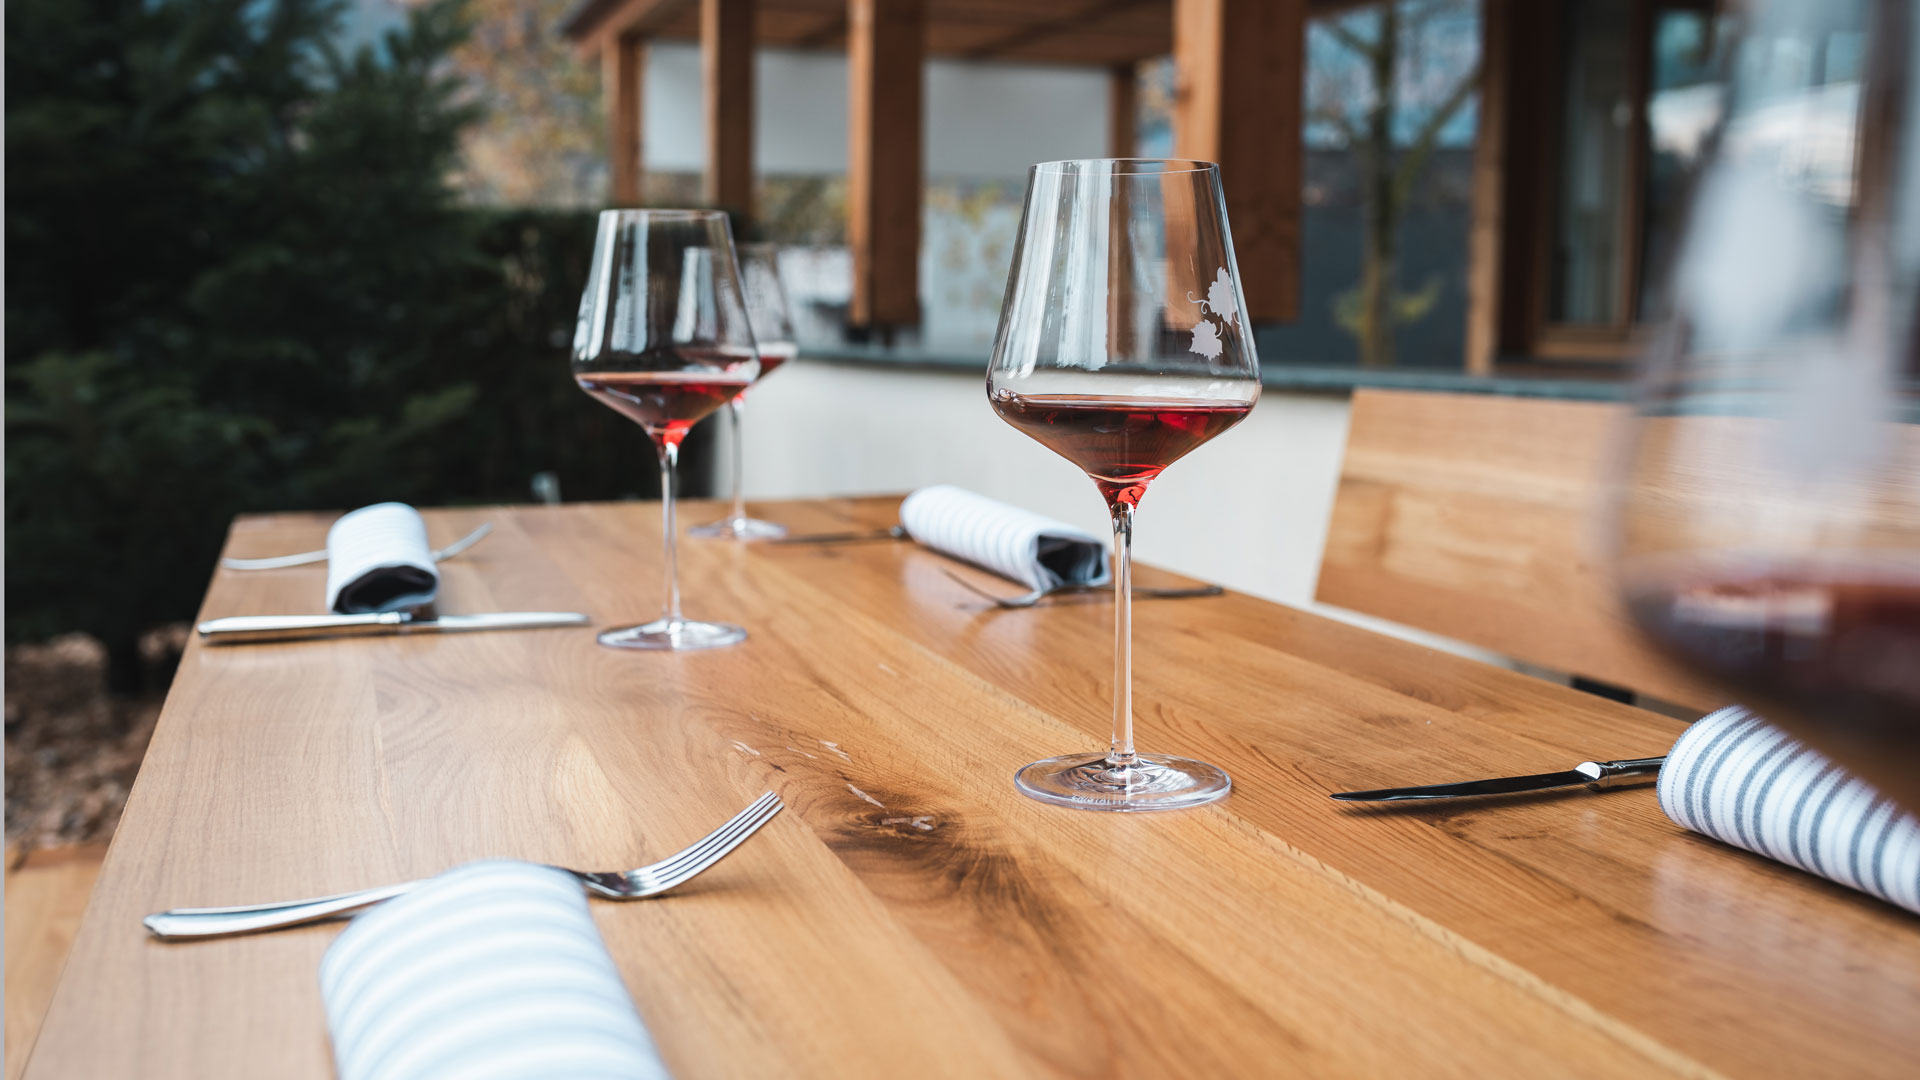 Die Designgarnitur Lago wird in der Gastronomie eingesetzt. Zwei Weingläser und Gedeck sind auf dem Tisch.